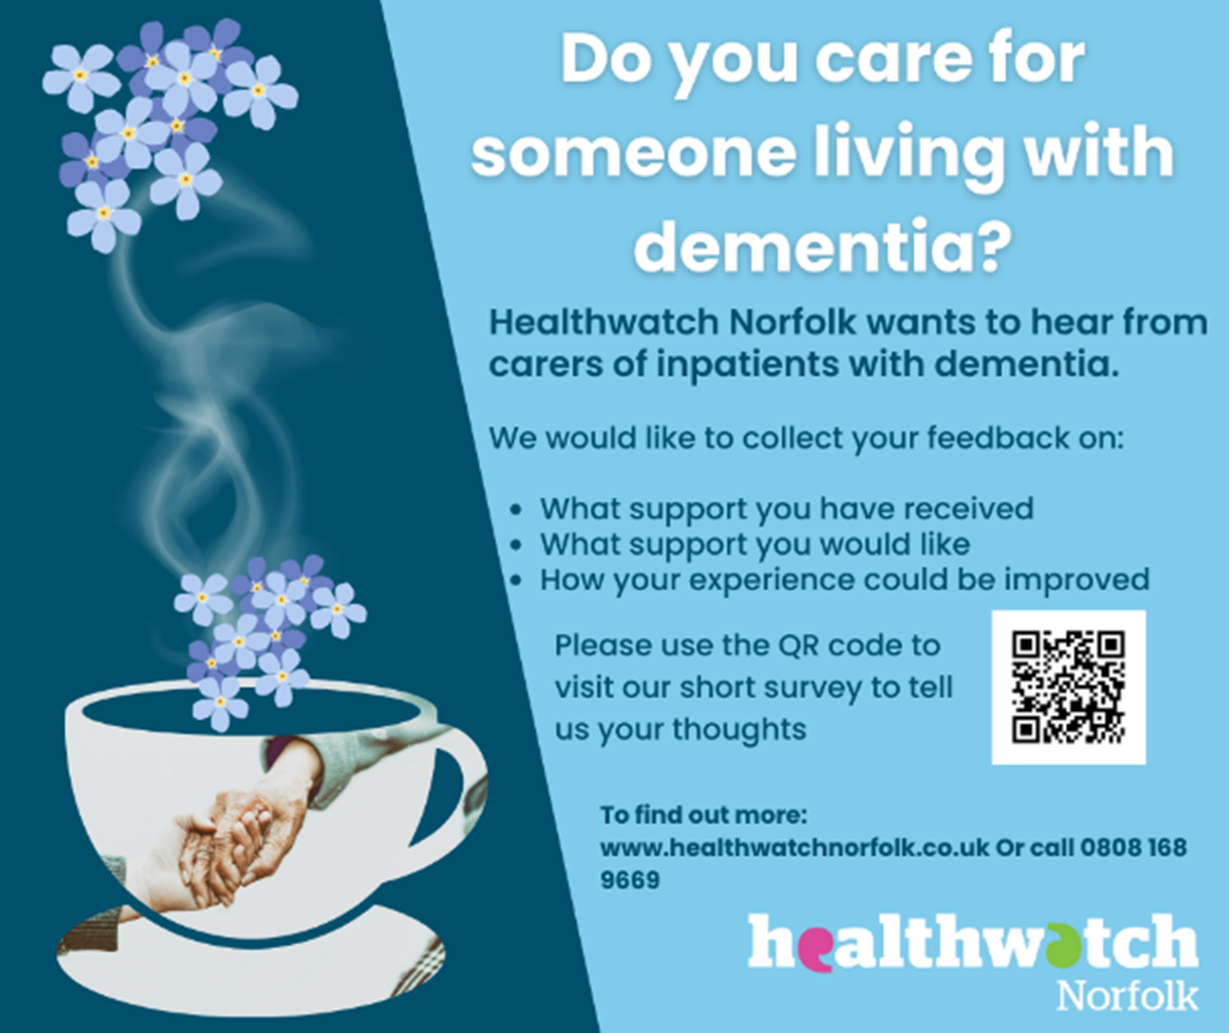 Healthwatch Norfolk dementia support feedback